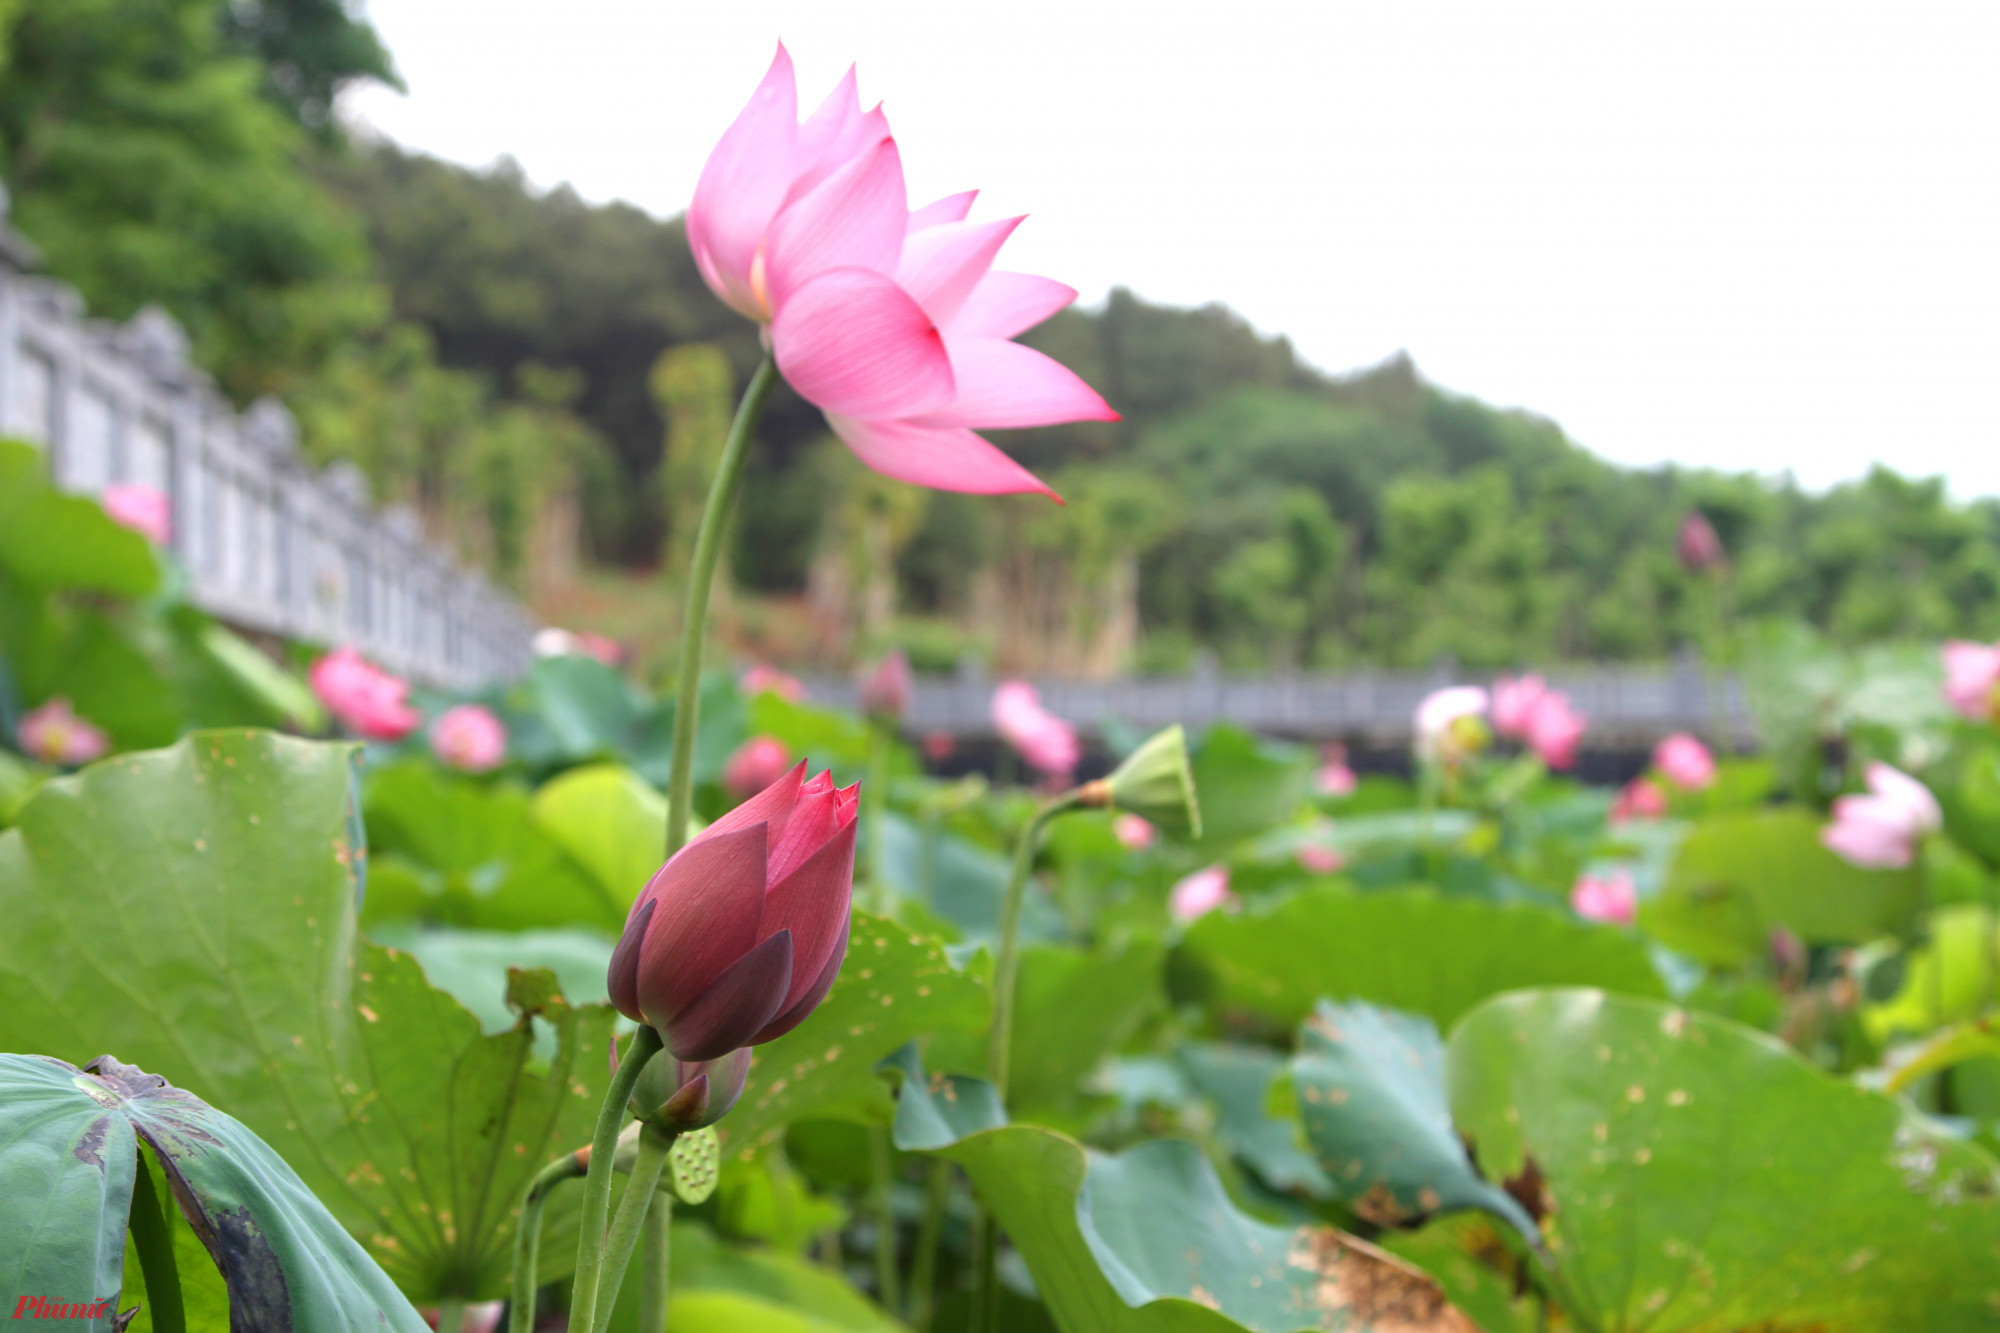 Mỗi độ tháng 5, khi về với xã Kim Liên (huyện Nam Đàn, Nghệ An), du khách được chiêm ngưỡng những đầm hoa sen mùa trổ bông khoe sắc, thơm ngát. Đây cũng là thời điểm hoa sen “bung lụa”, đẹp nhất trong mùa.